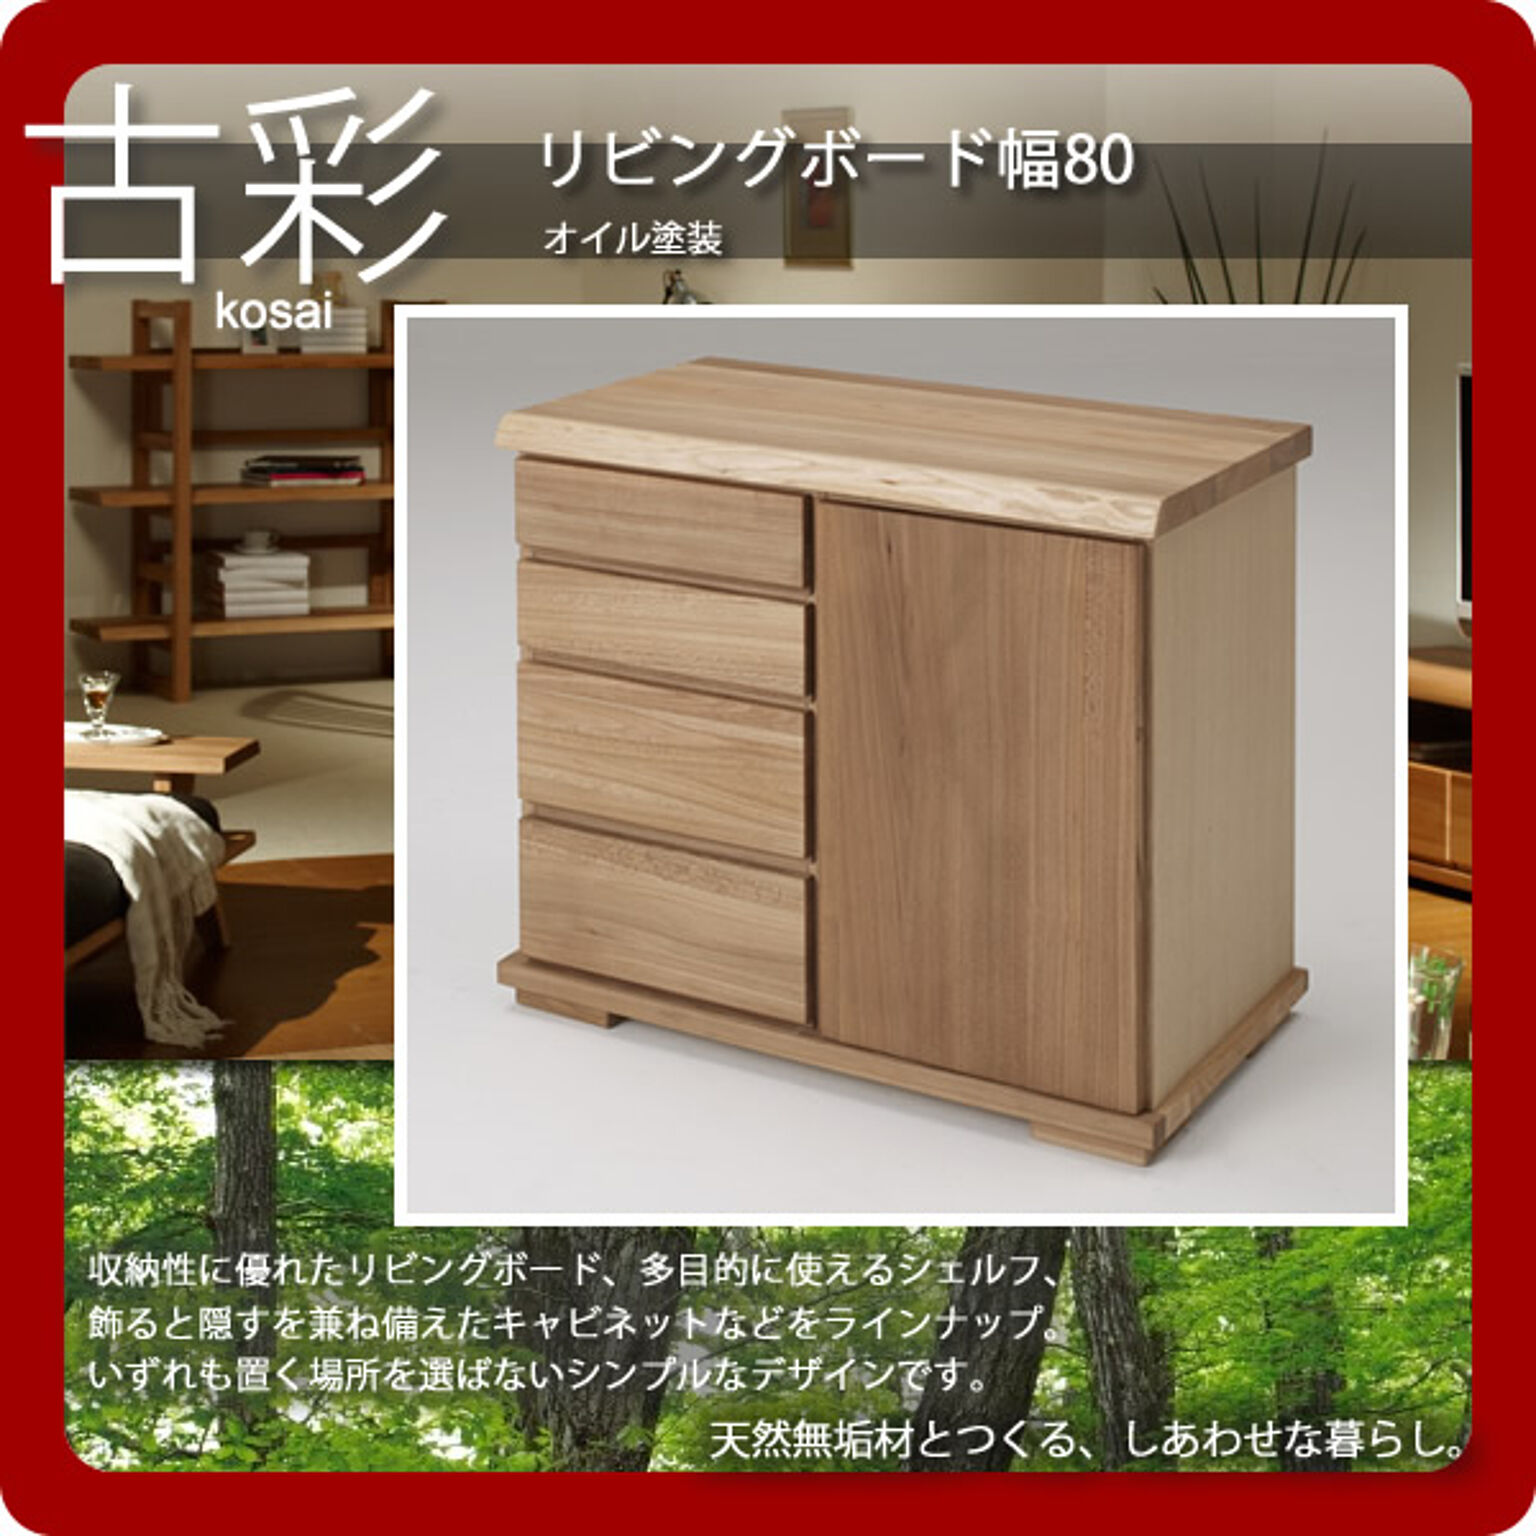 人にも環境にもやさしい家具シリーズ【古彩】★リビングボード幅80KO-LV80収納 オイル塗装  